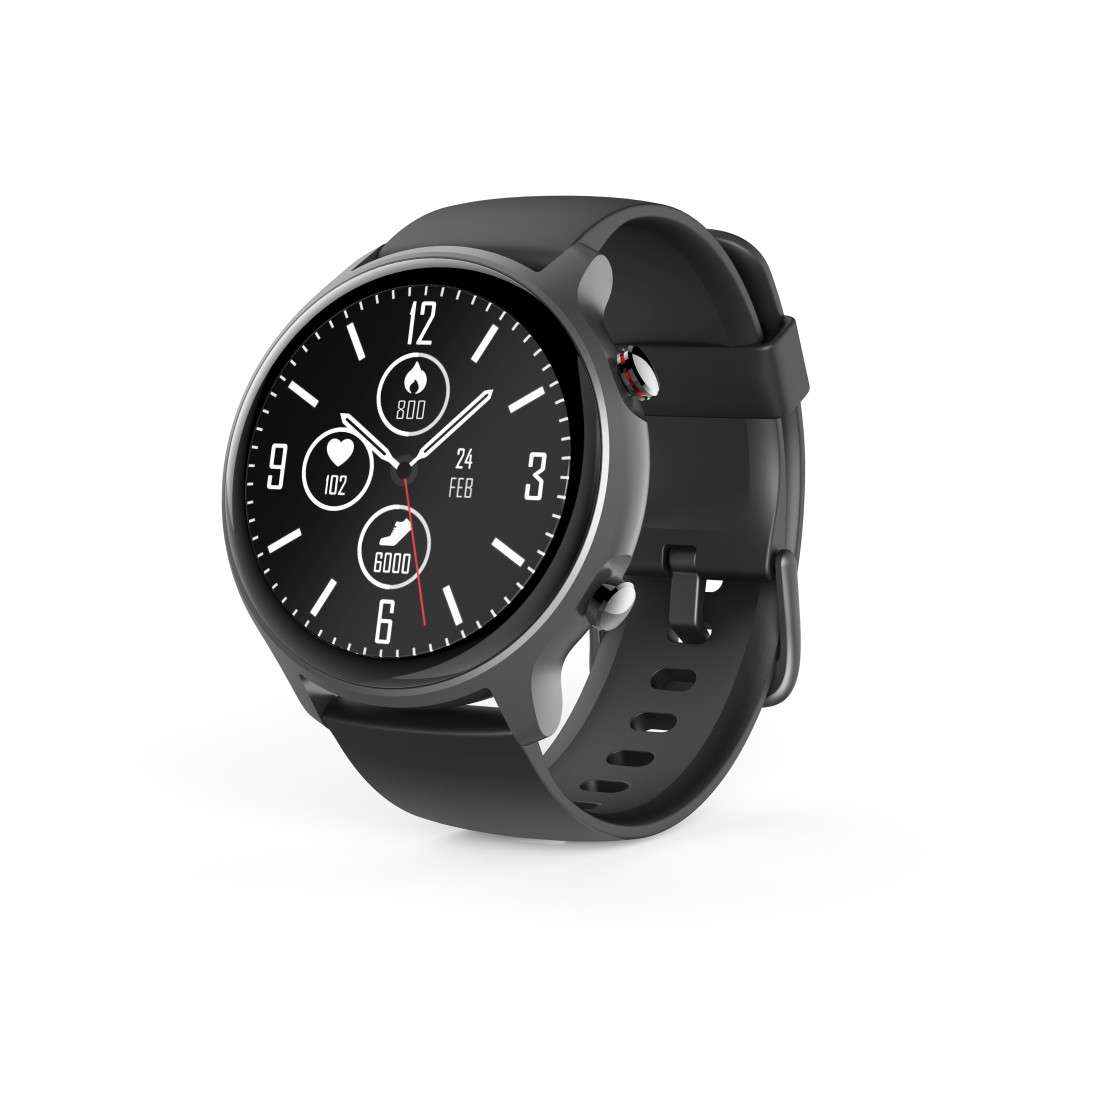 HAMA Smartwatch Fit Watch 6910, GPS, wasserdicht, Herzfrequenz, Blutsauerstoff